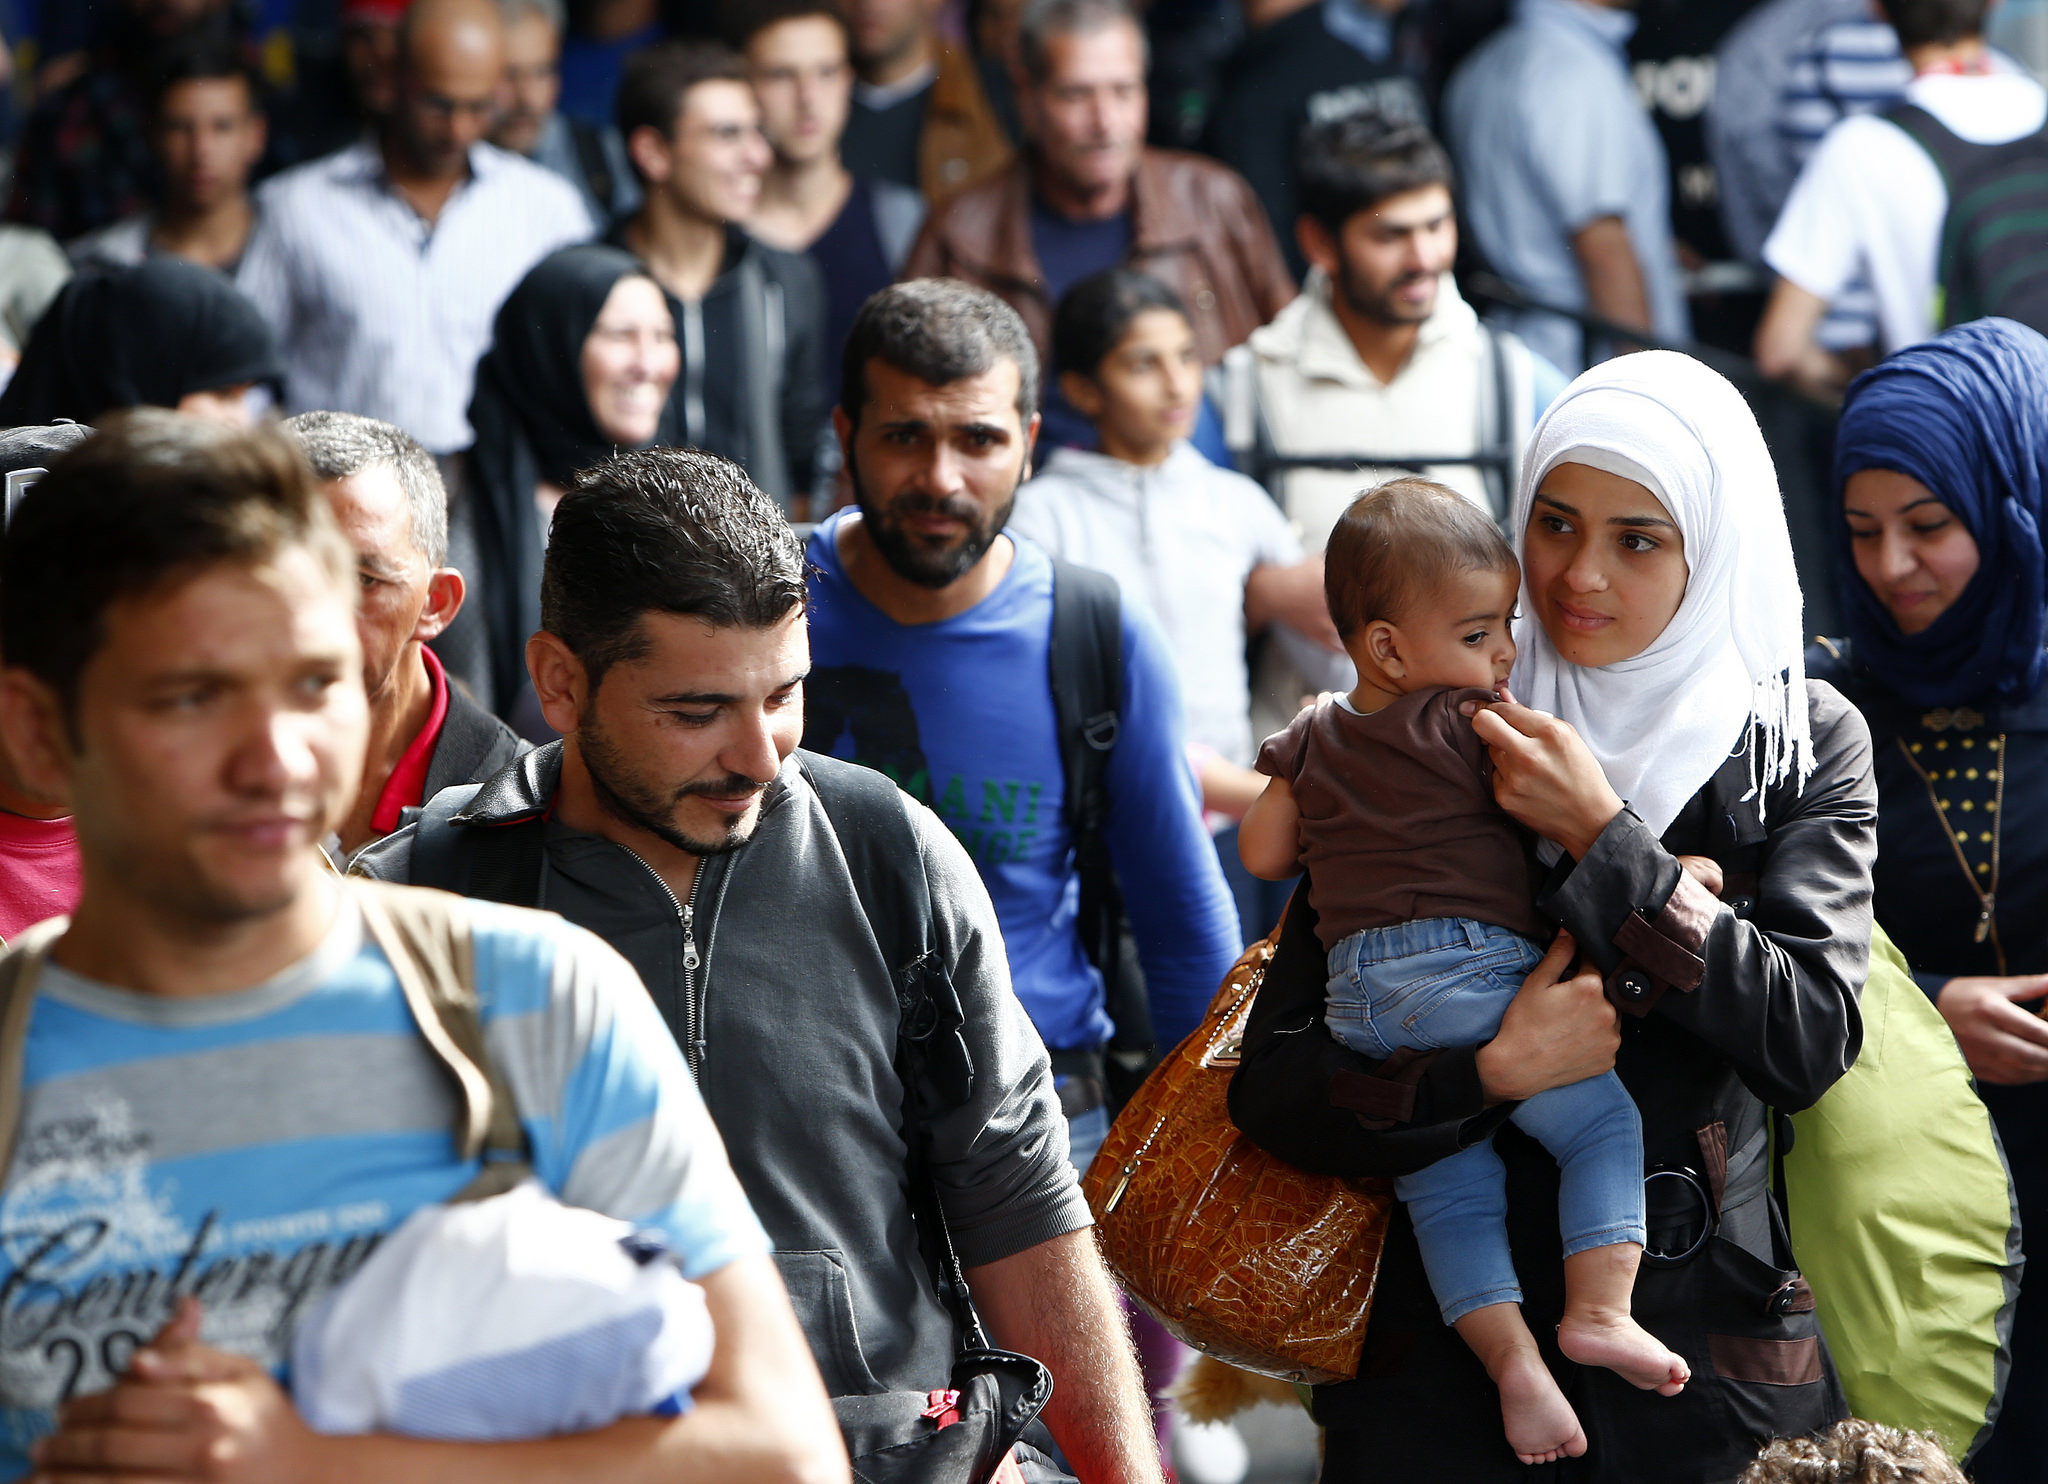 Τρομακτικές εικόνες απο τη  δημογραφική αλλοίωση στην Ευρώπη από τους μετανάστες (βίντεο)